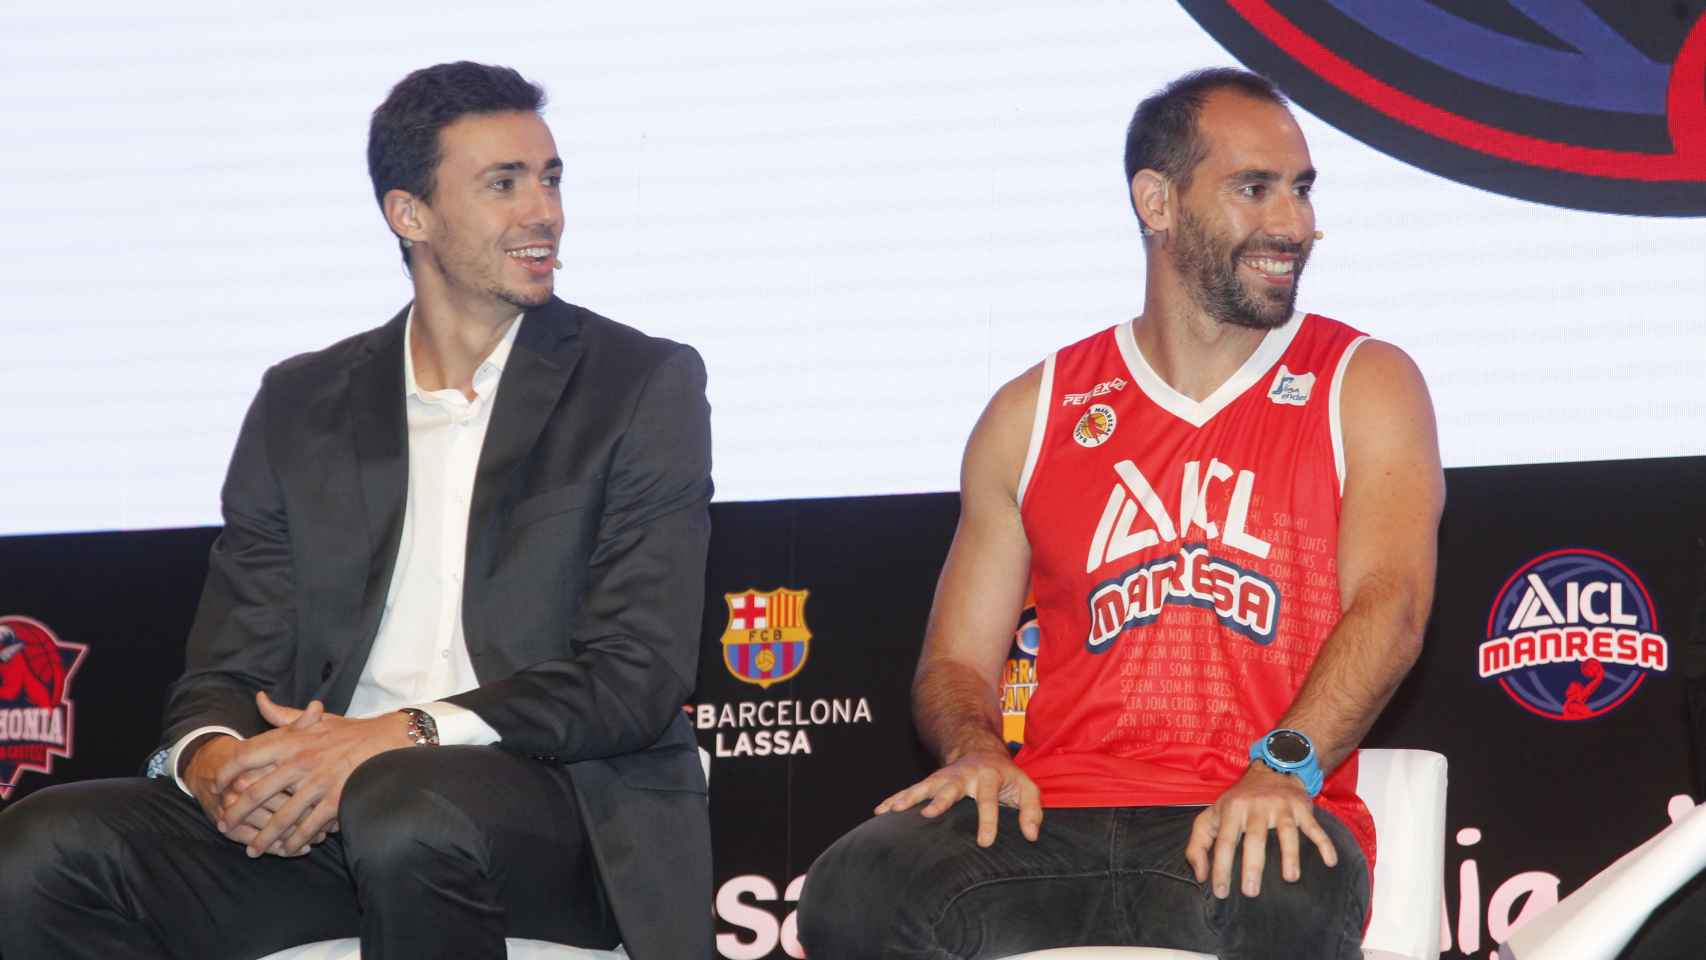 Pere Tomàs y Ander Mirambell durante la presentación de la ACB.